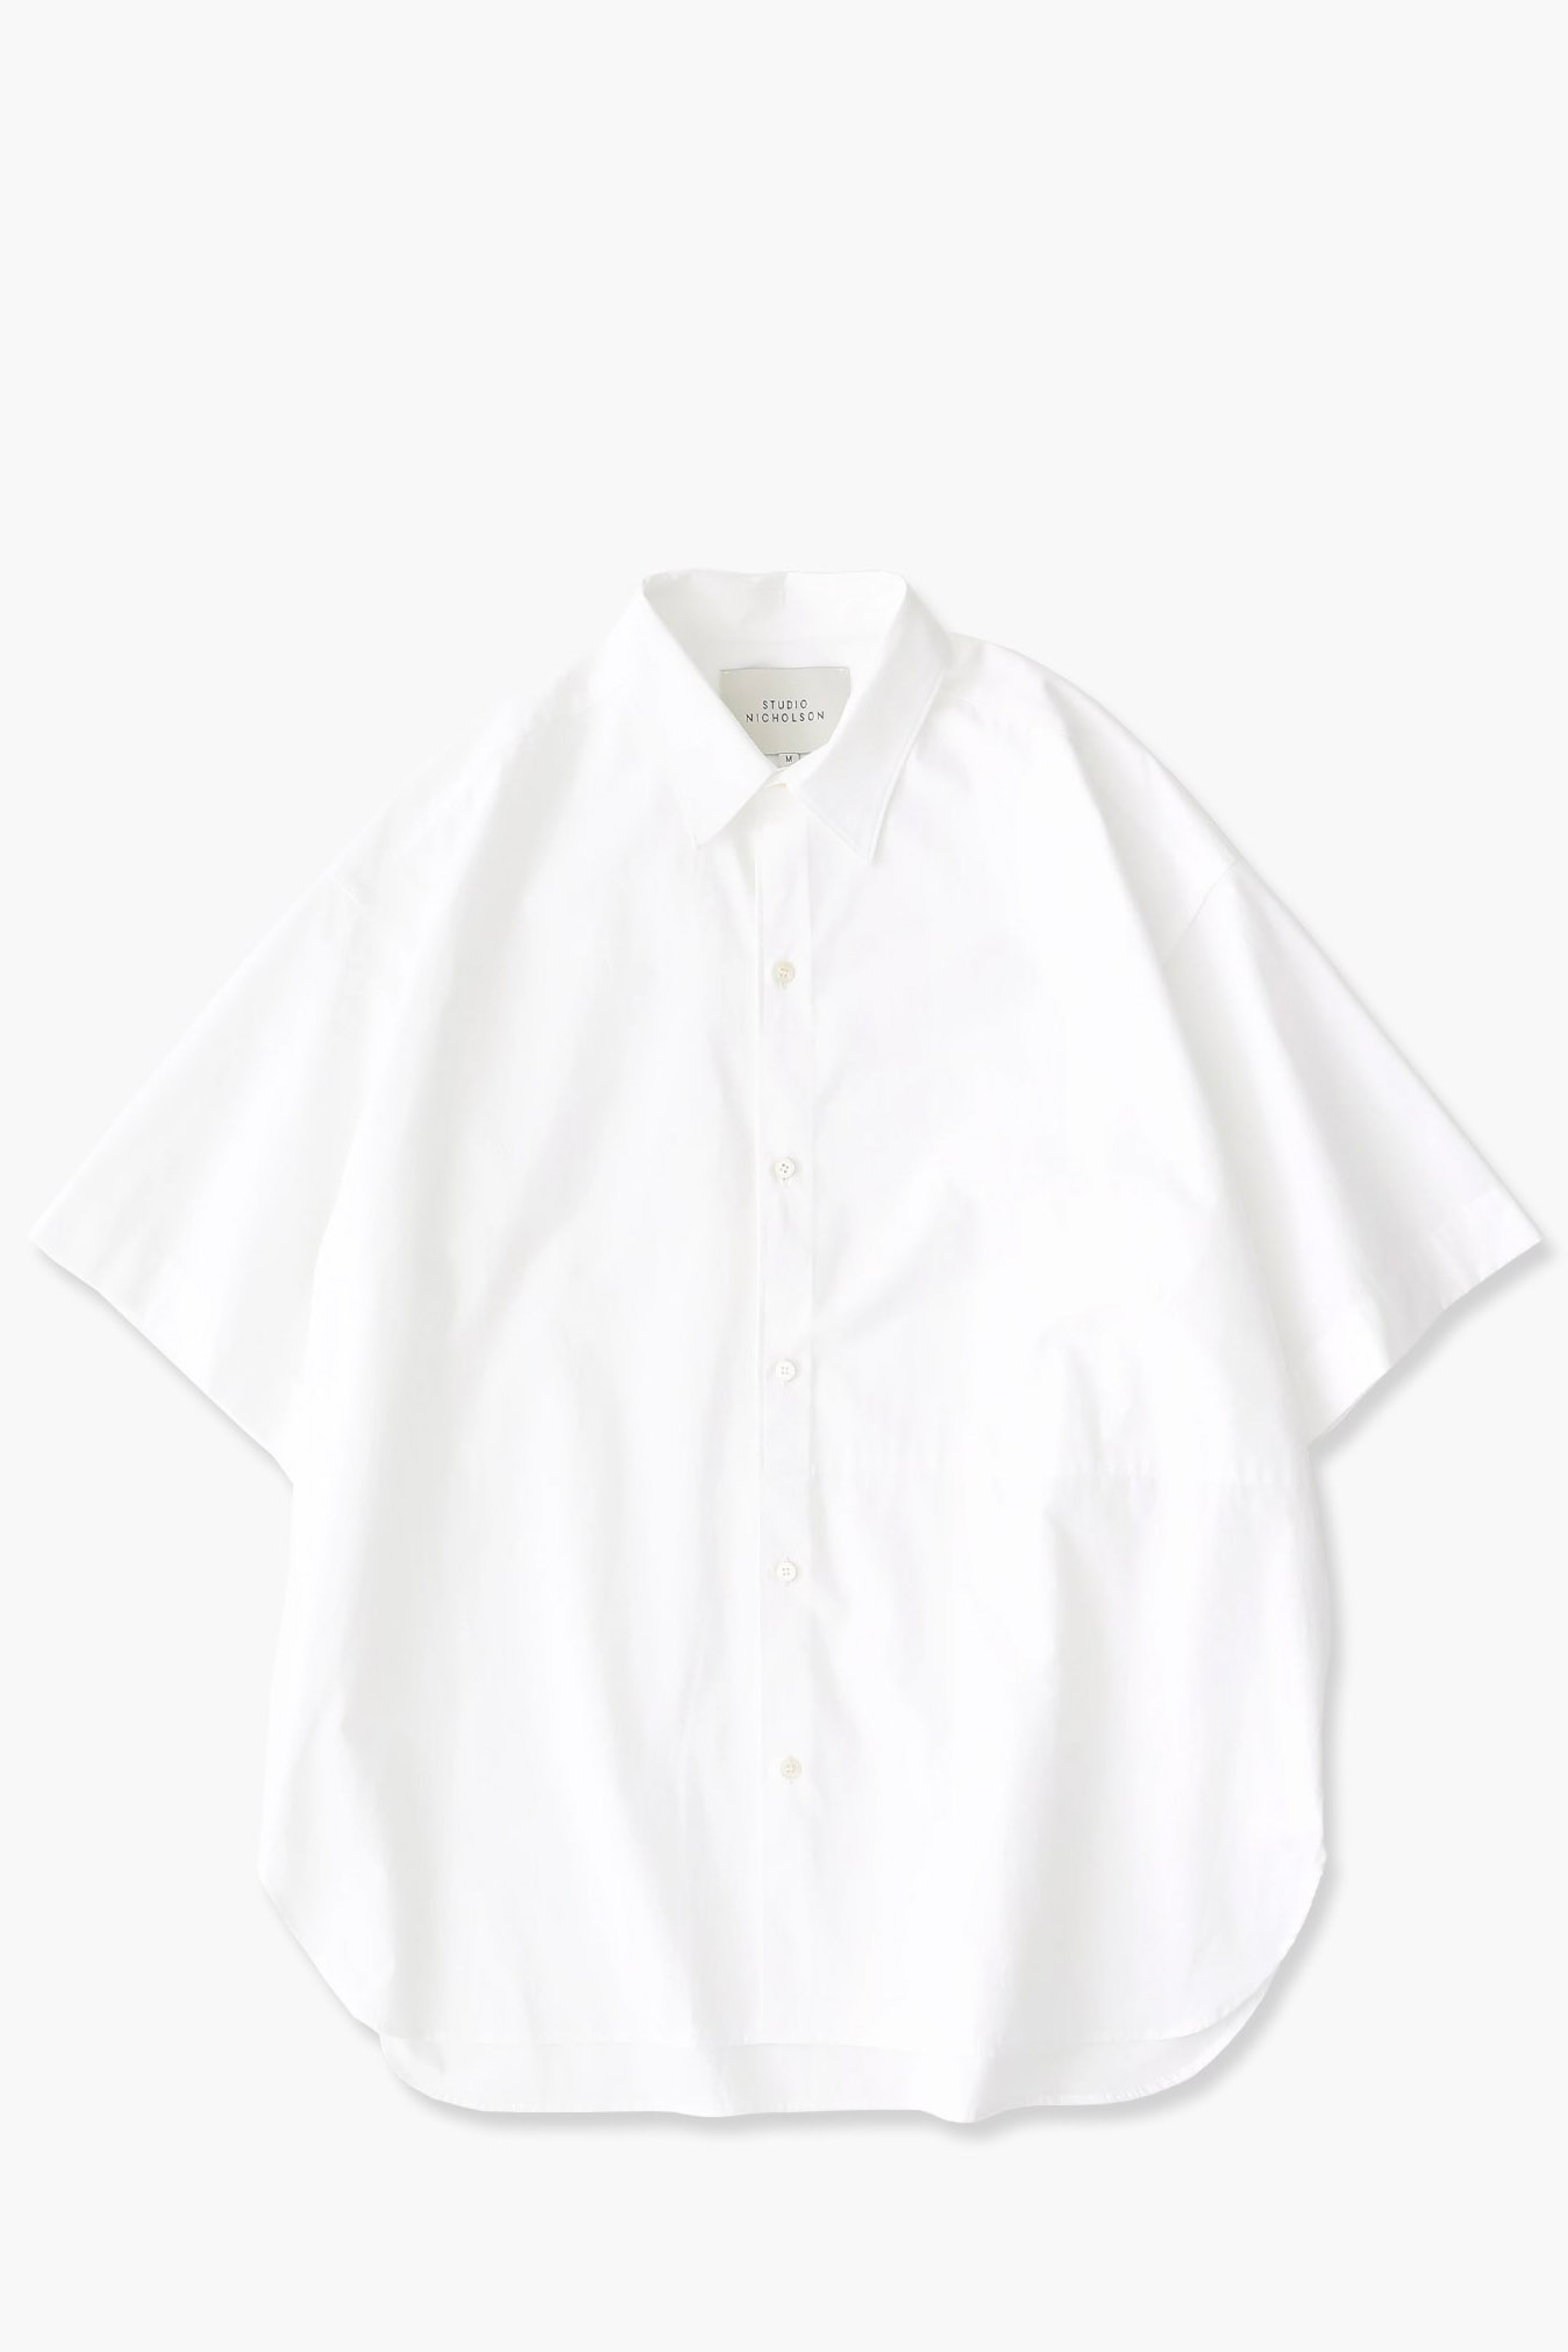 Sorono Shirt in Optic White – MUKAE MÜZ